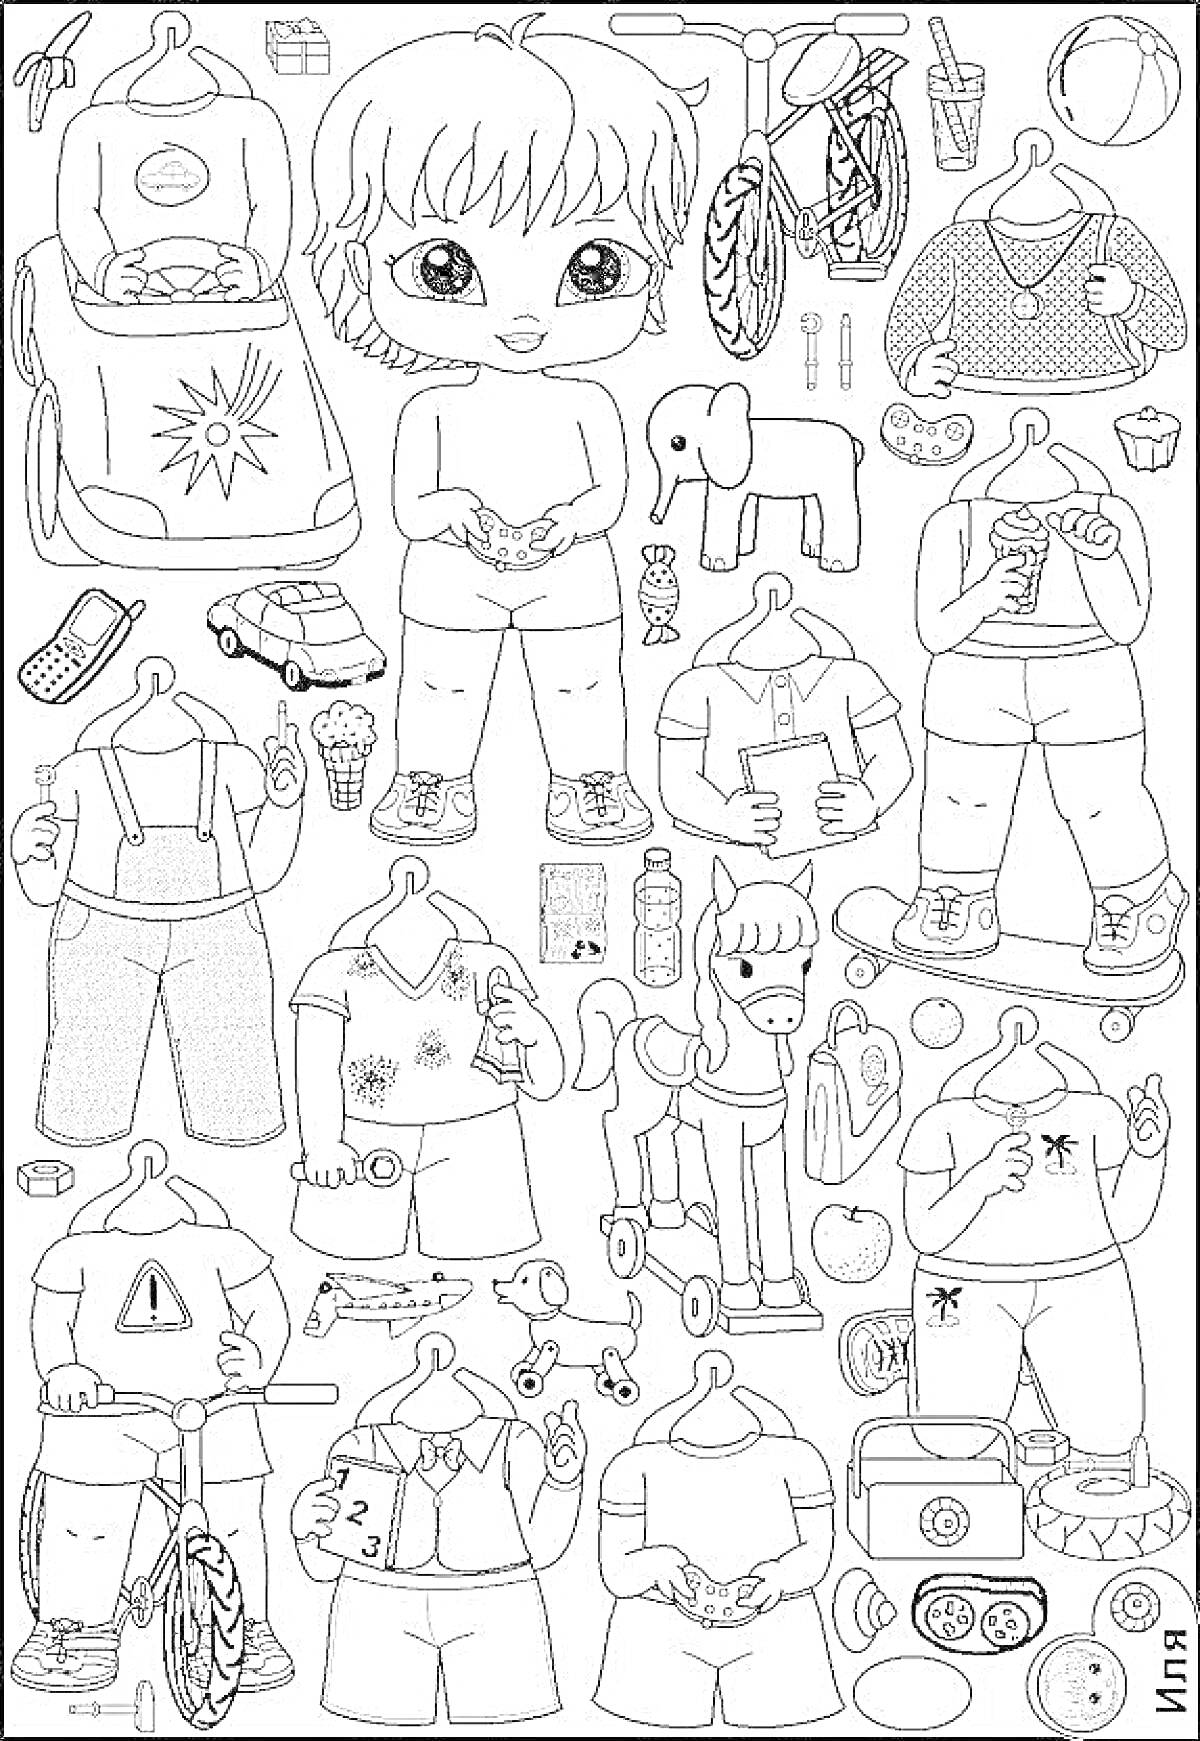 Раскраска Кукла ЛОЛ с бумажными одеждами и аксессуарами: кукла, одежда, рюкзак, игрушки, собака, леденец, мороженое, сок, спортивные предметы, телефон, радио